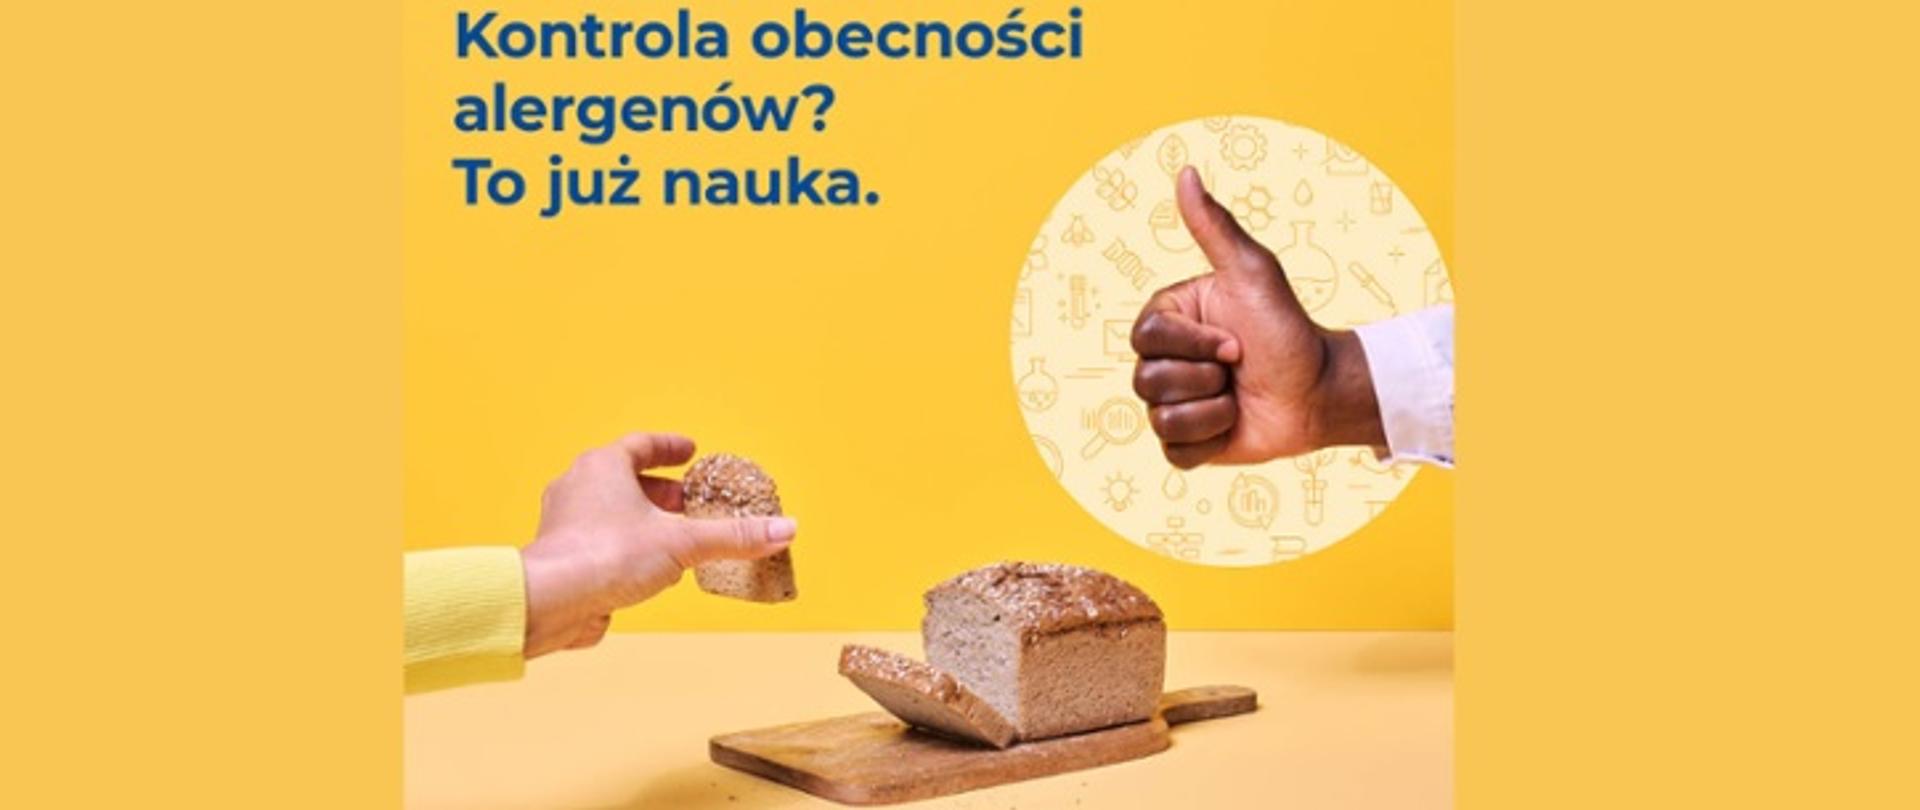 Grafika przedstawia chleb i dłoń, która trzyma kawałek pieczywa oraz drugą dłoń z kciukiem w górę na znak "ok"